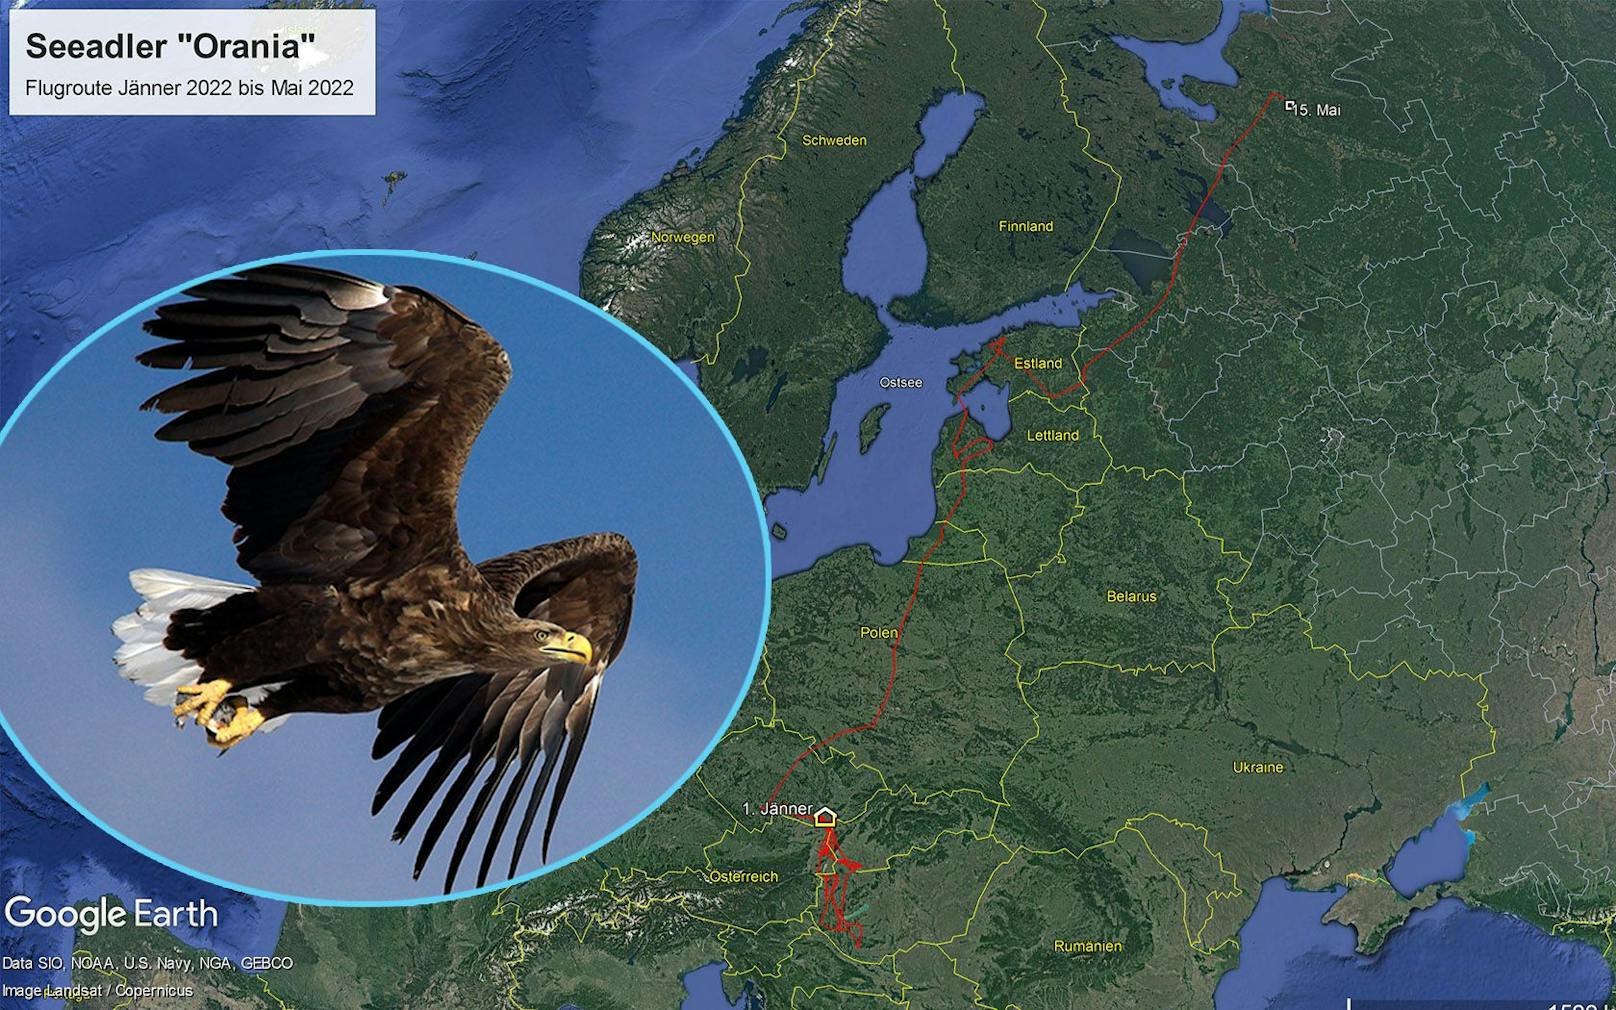 Seeadler "Orania" flog 2.300 Kilometer von den Donau-Auen bis nach Russland. 